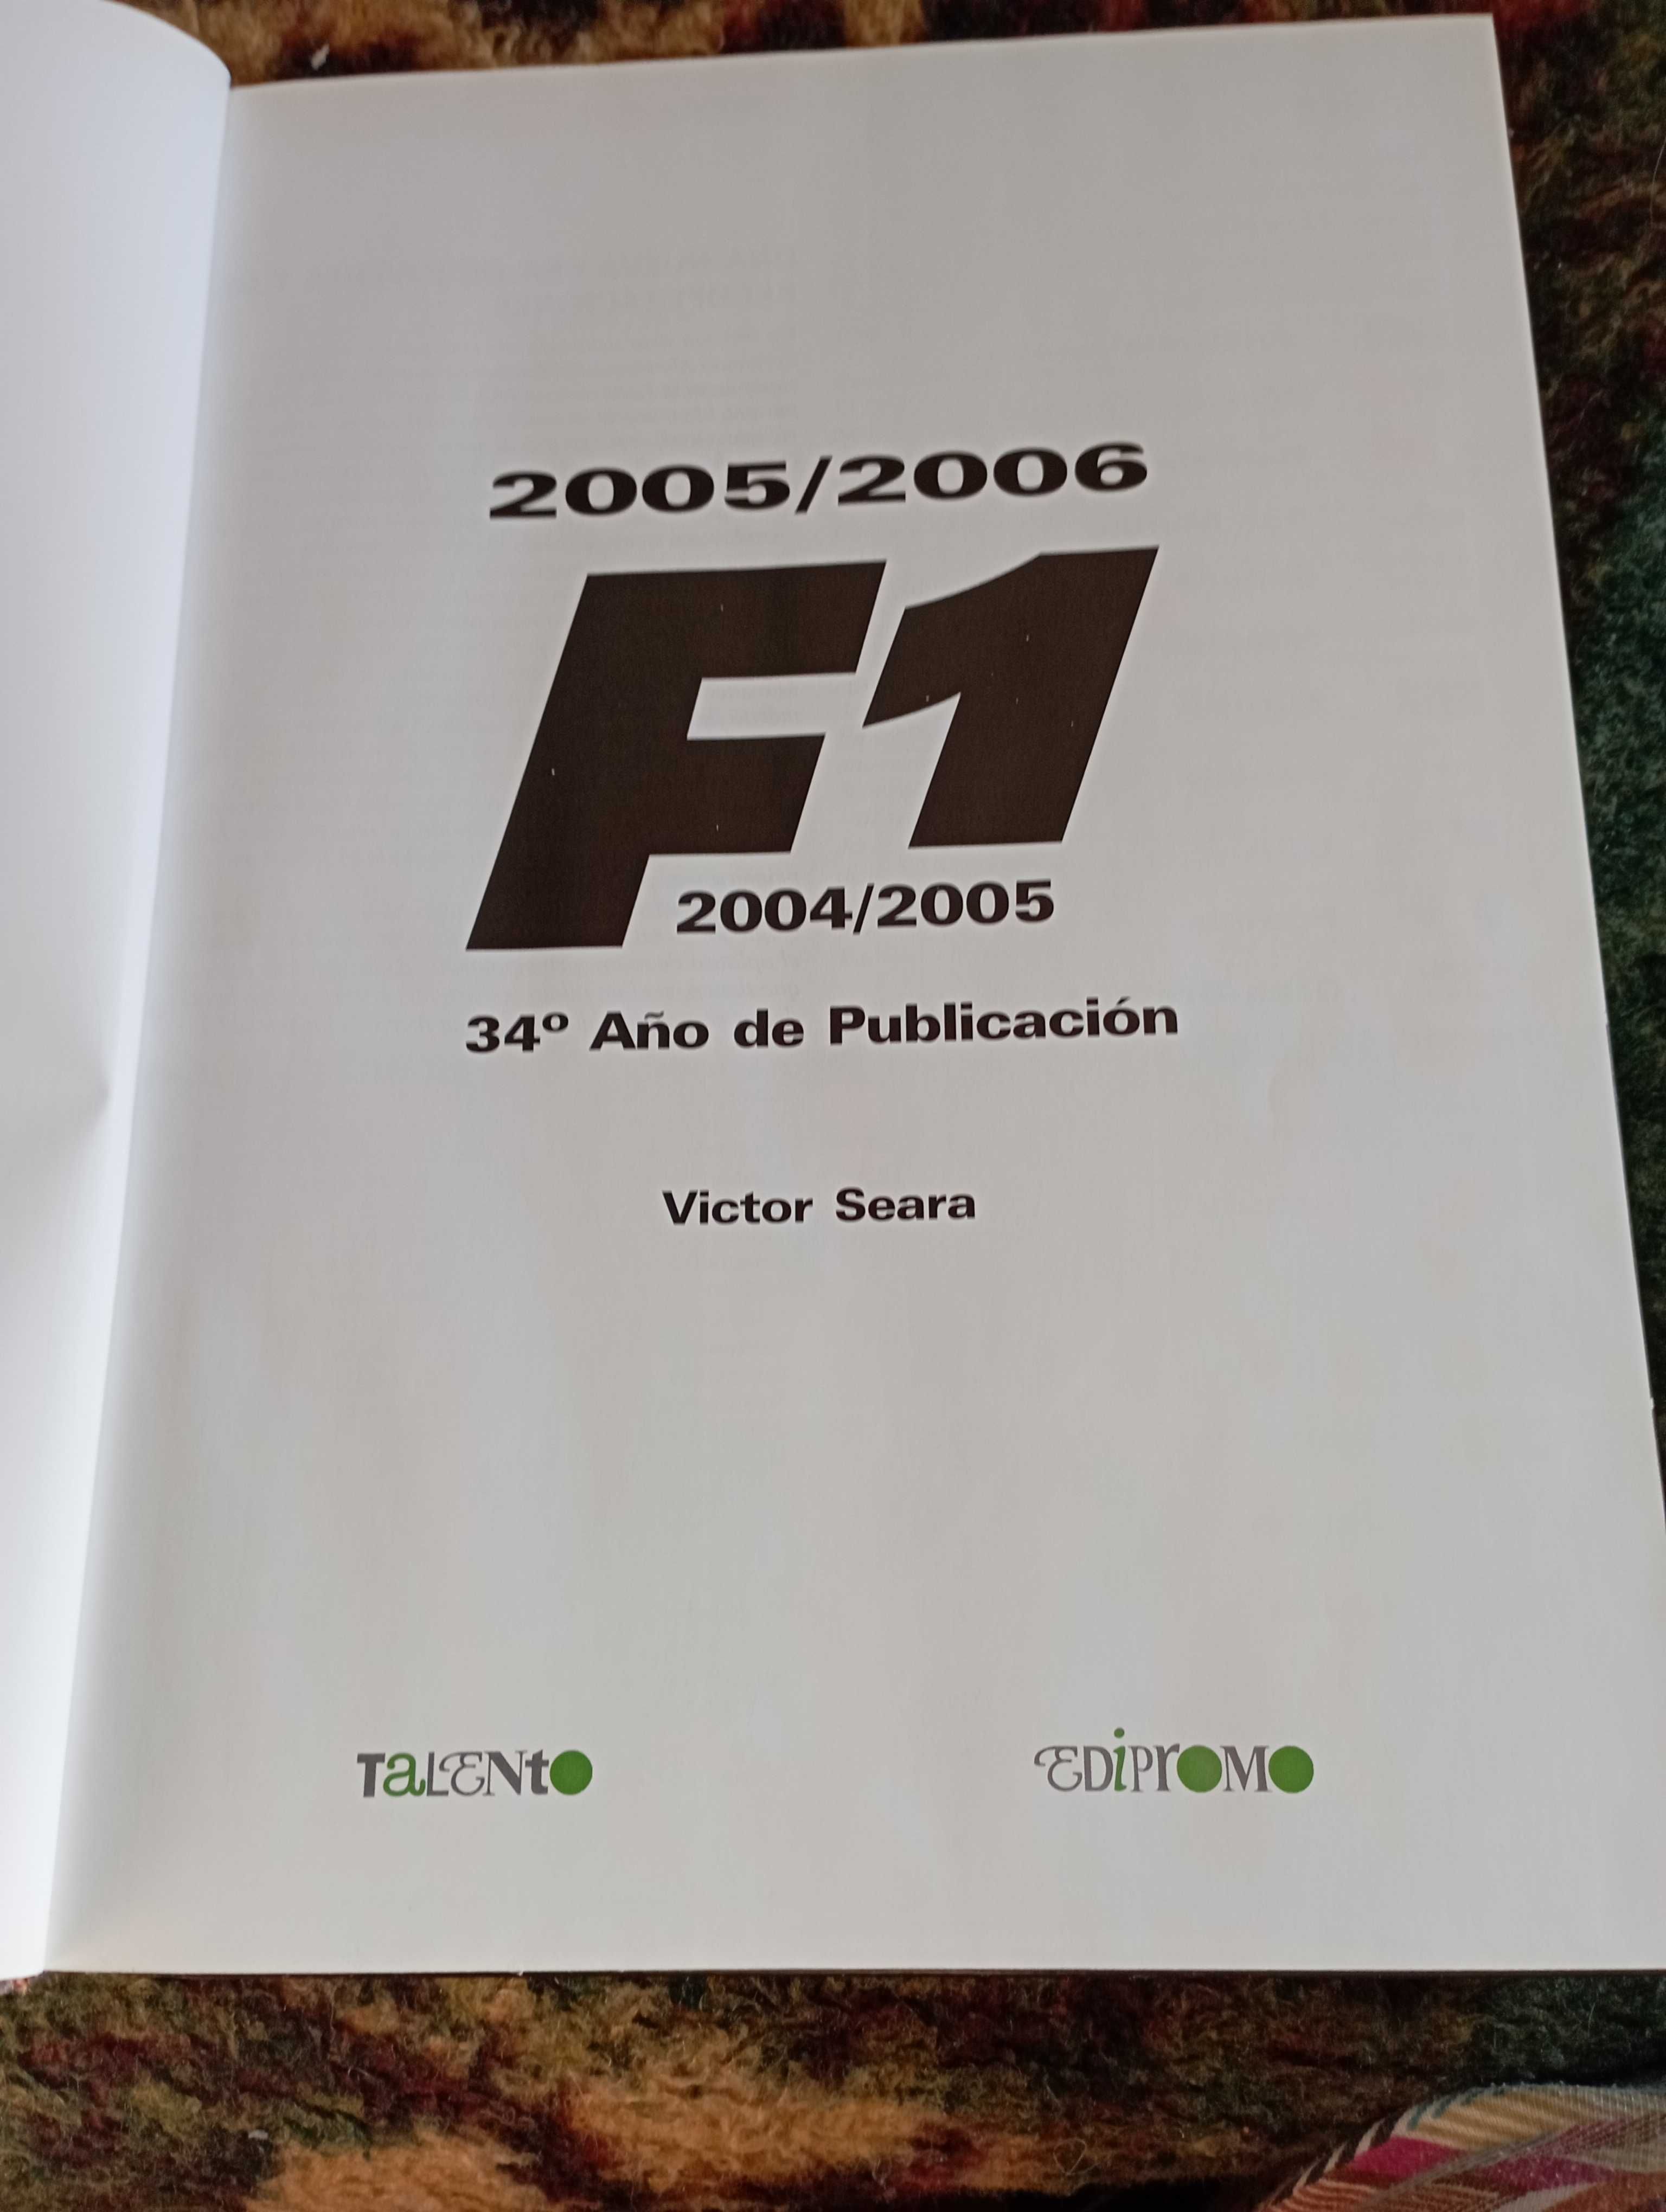 Fórmula 1 do ano 2005/2006